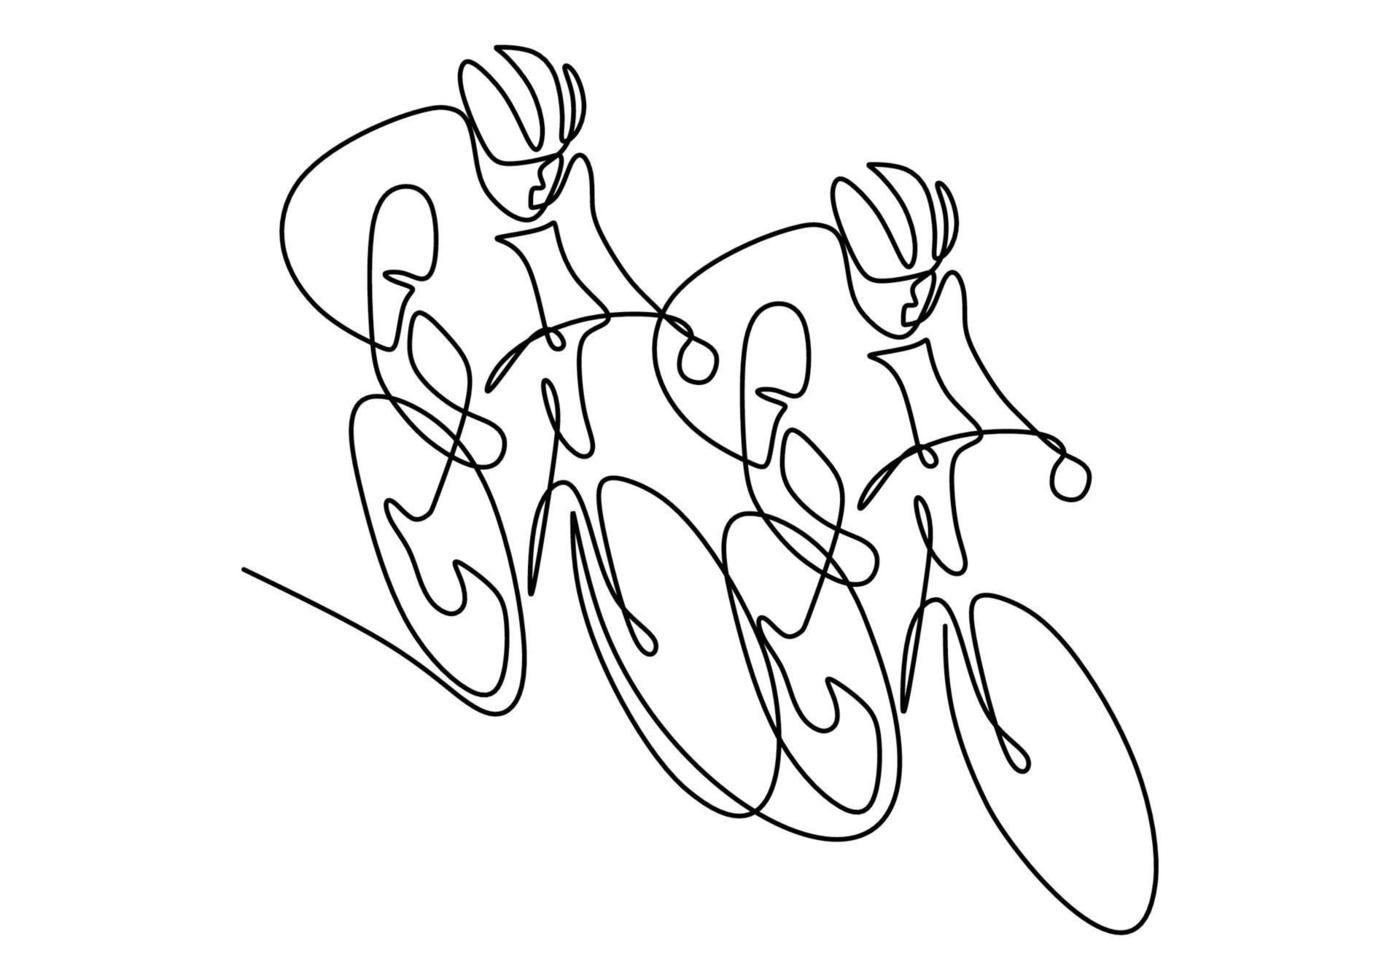 eine fortlaufende Strichzeichnung des Radrennrennens des jungen energischen Mannes auf der Radstrecke. Rennradfahrer-Konzept. Hand Draw Design für Radsportturnier Banner minimalistischen Stil. Vektorillustration vektor